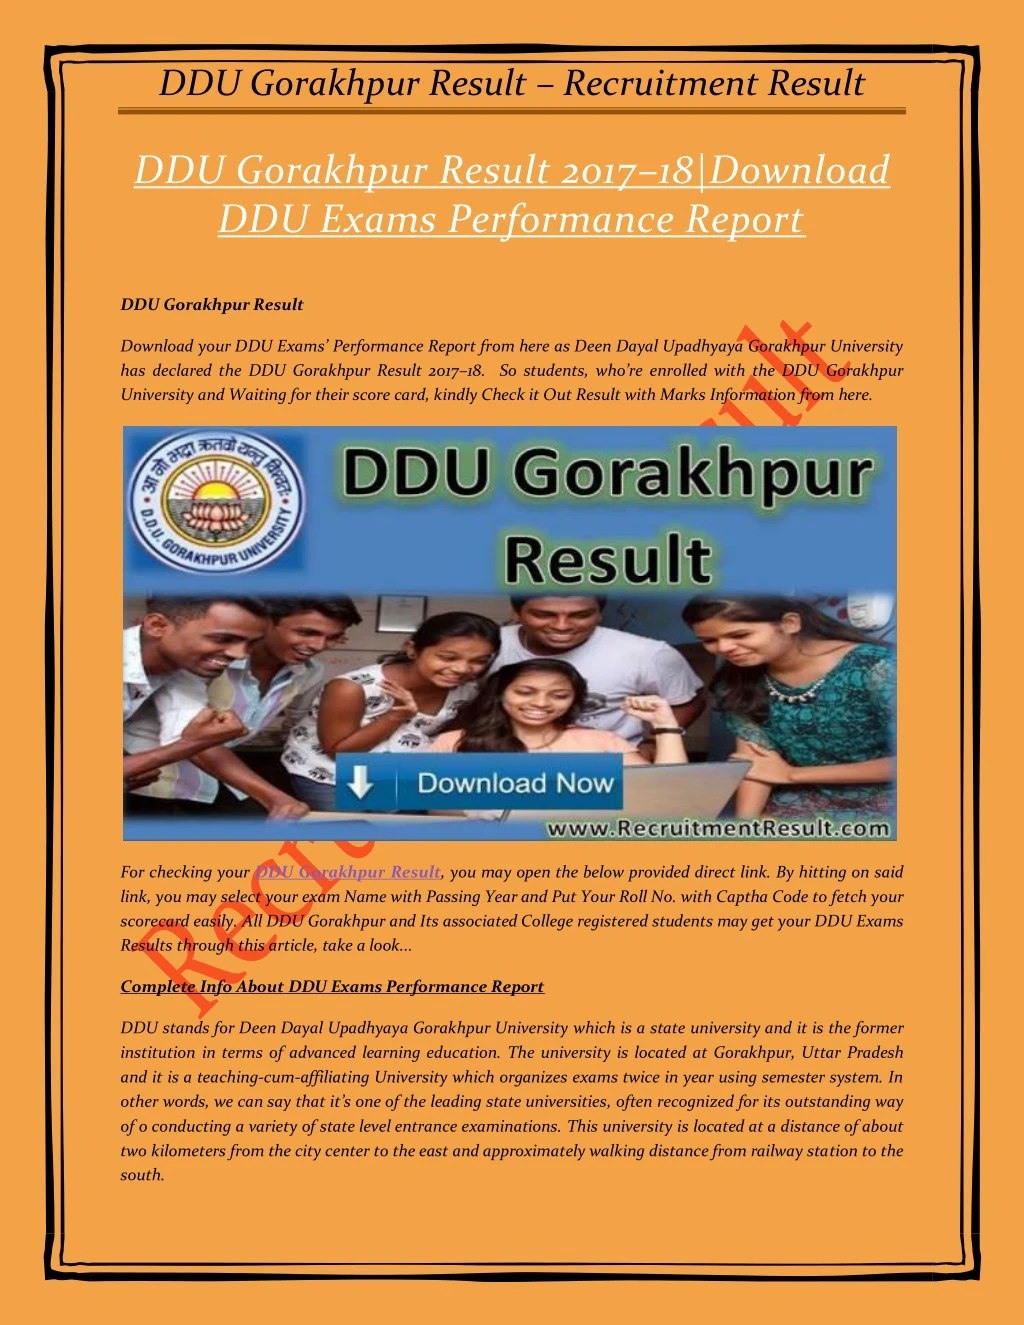 ddu gorakhpur result recruitment result